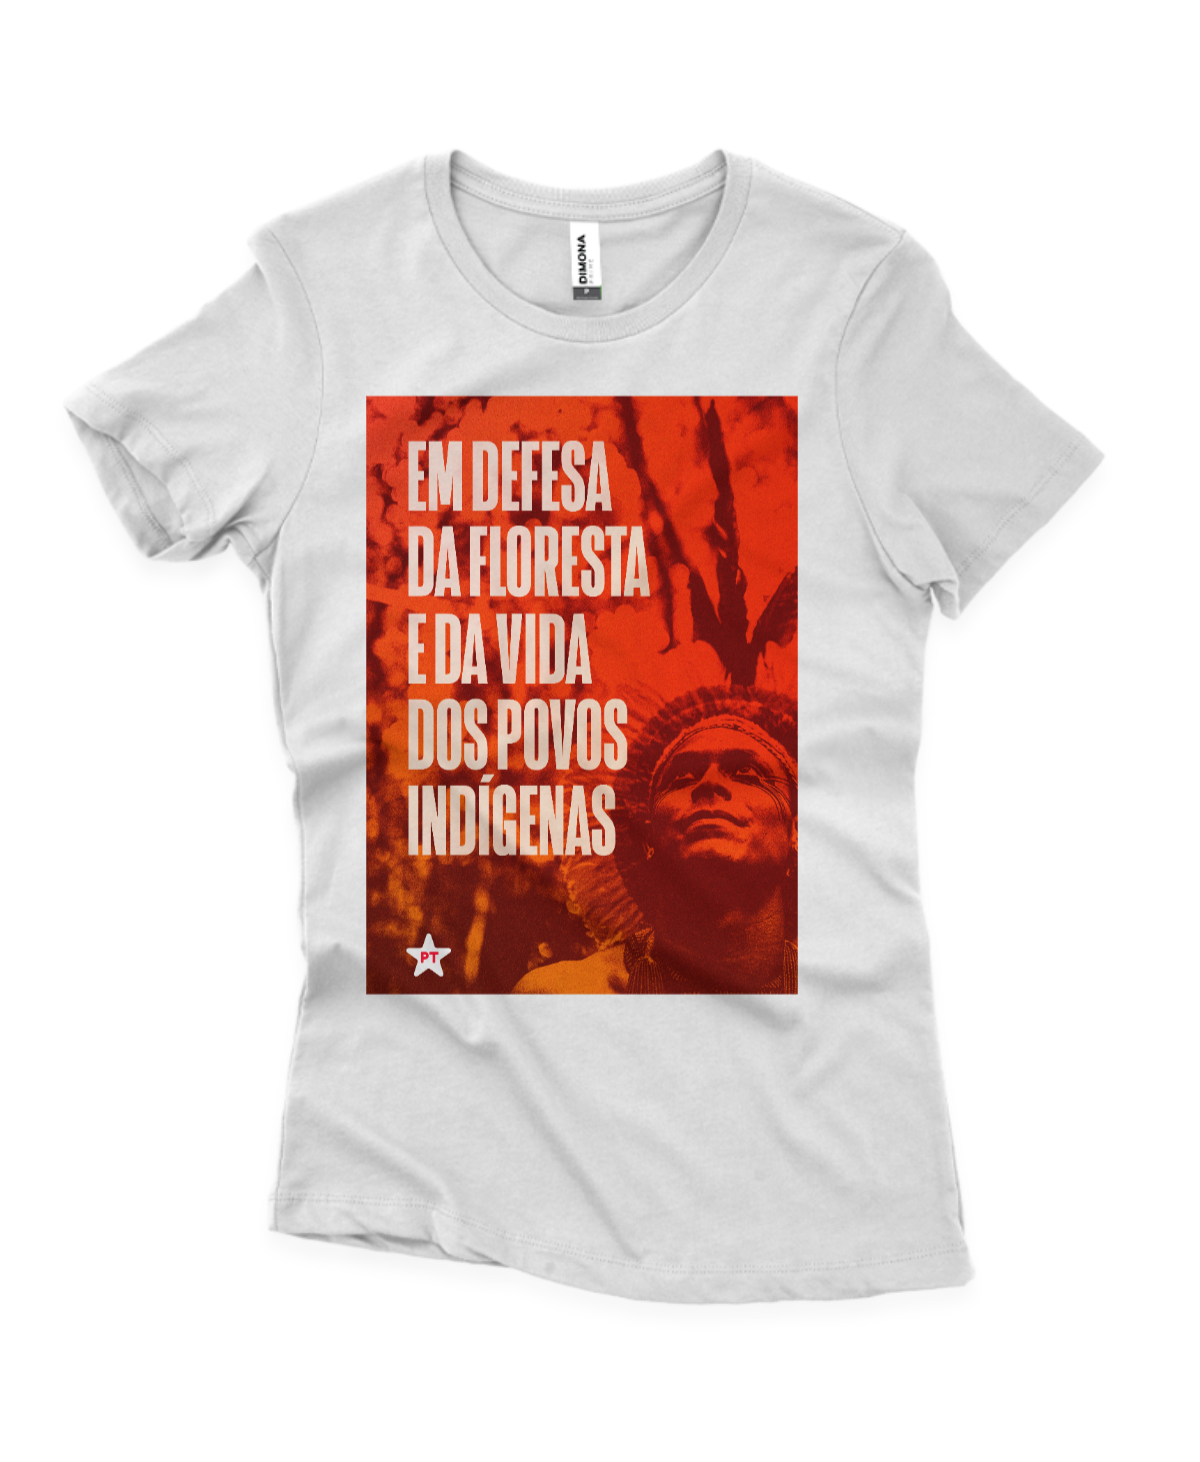 Camiseta Feminina Em defesa da floresta e da vida dos povos indígenas